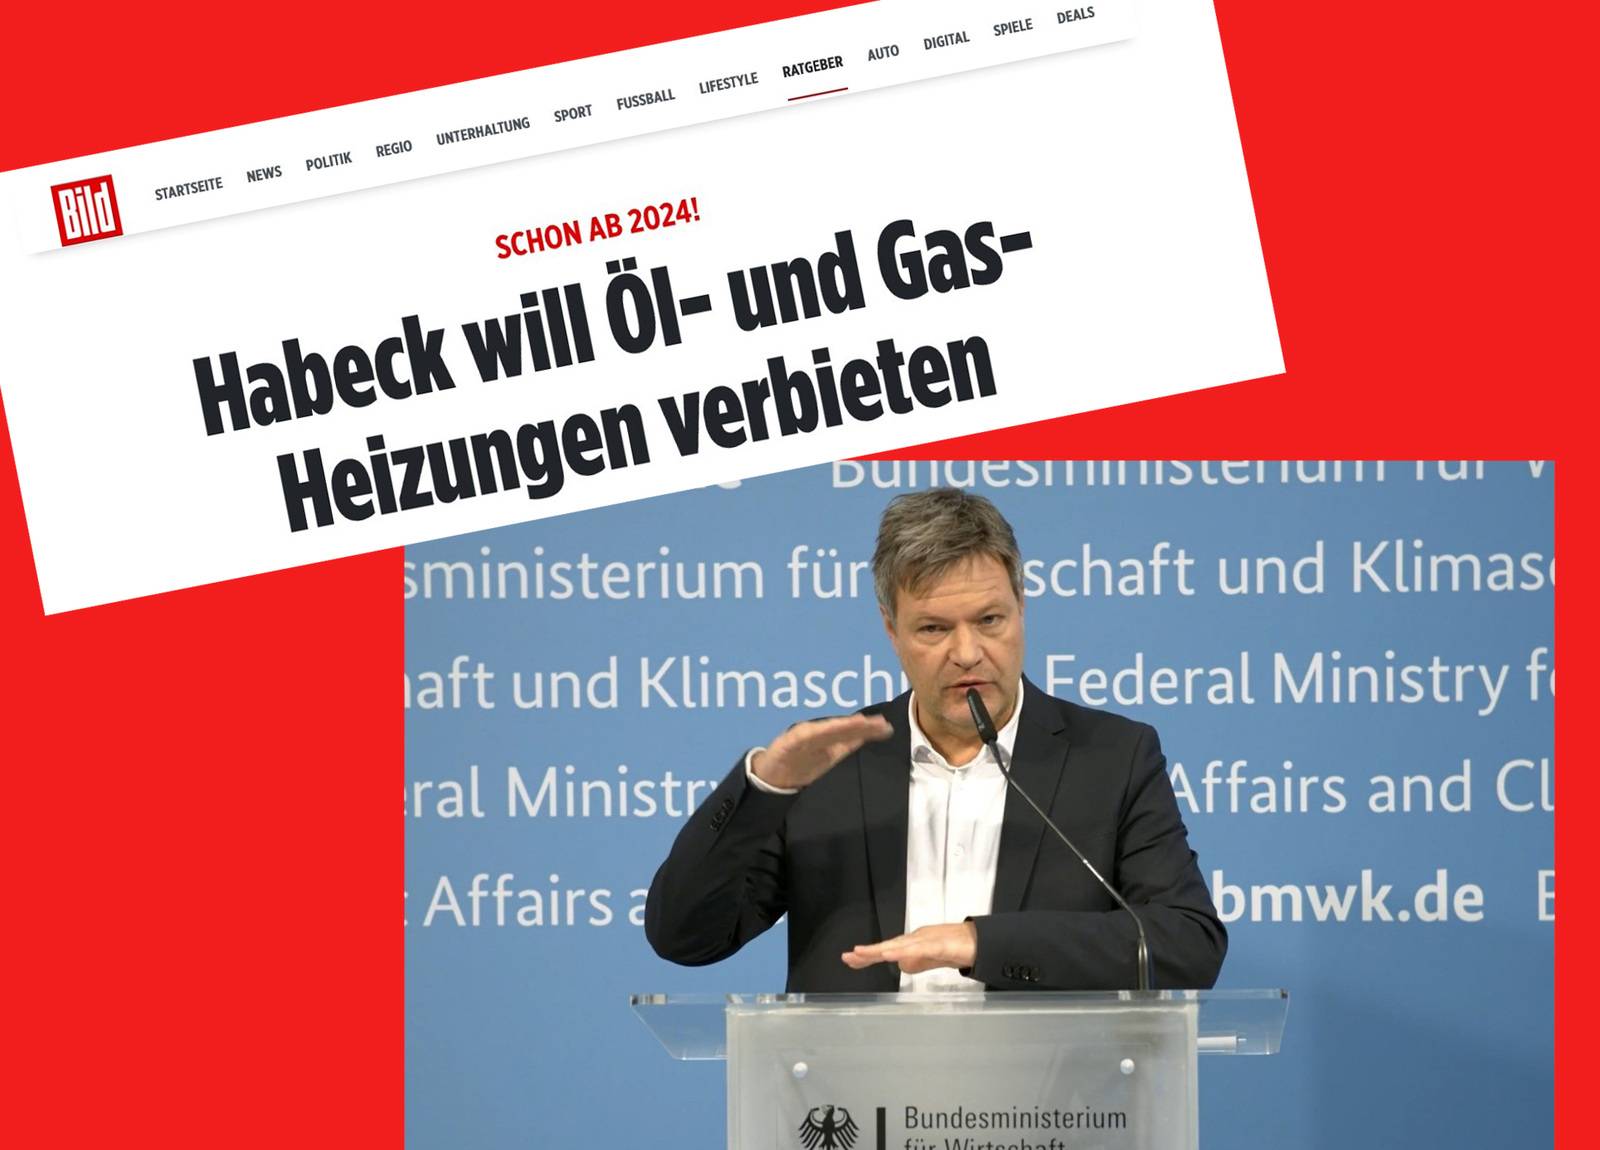 Habecks Öl-Gasheizungs-Verbot: BILD.de löst mediale Lawine und